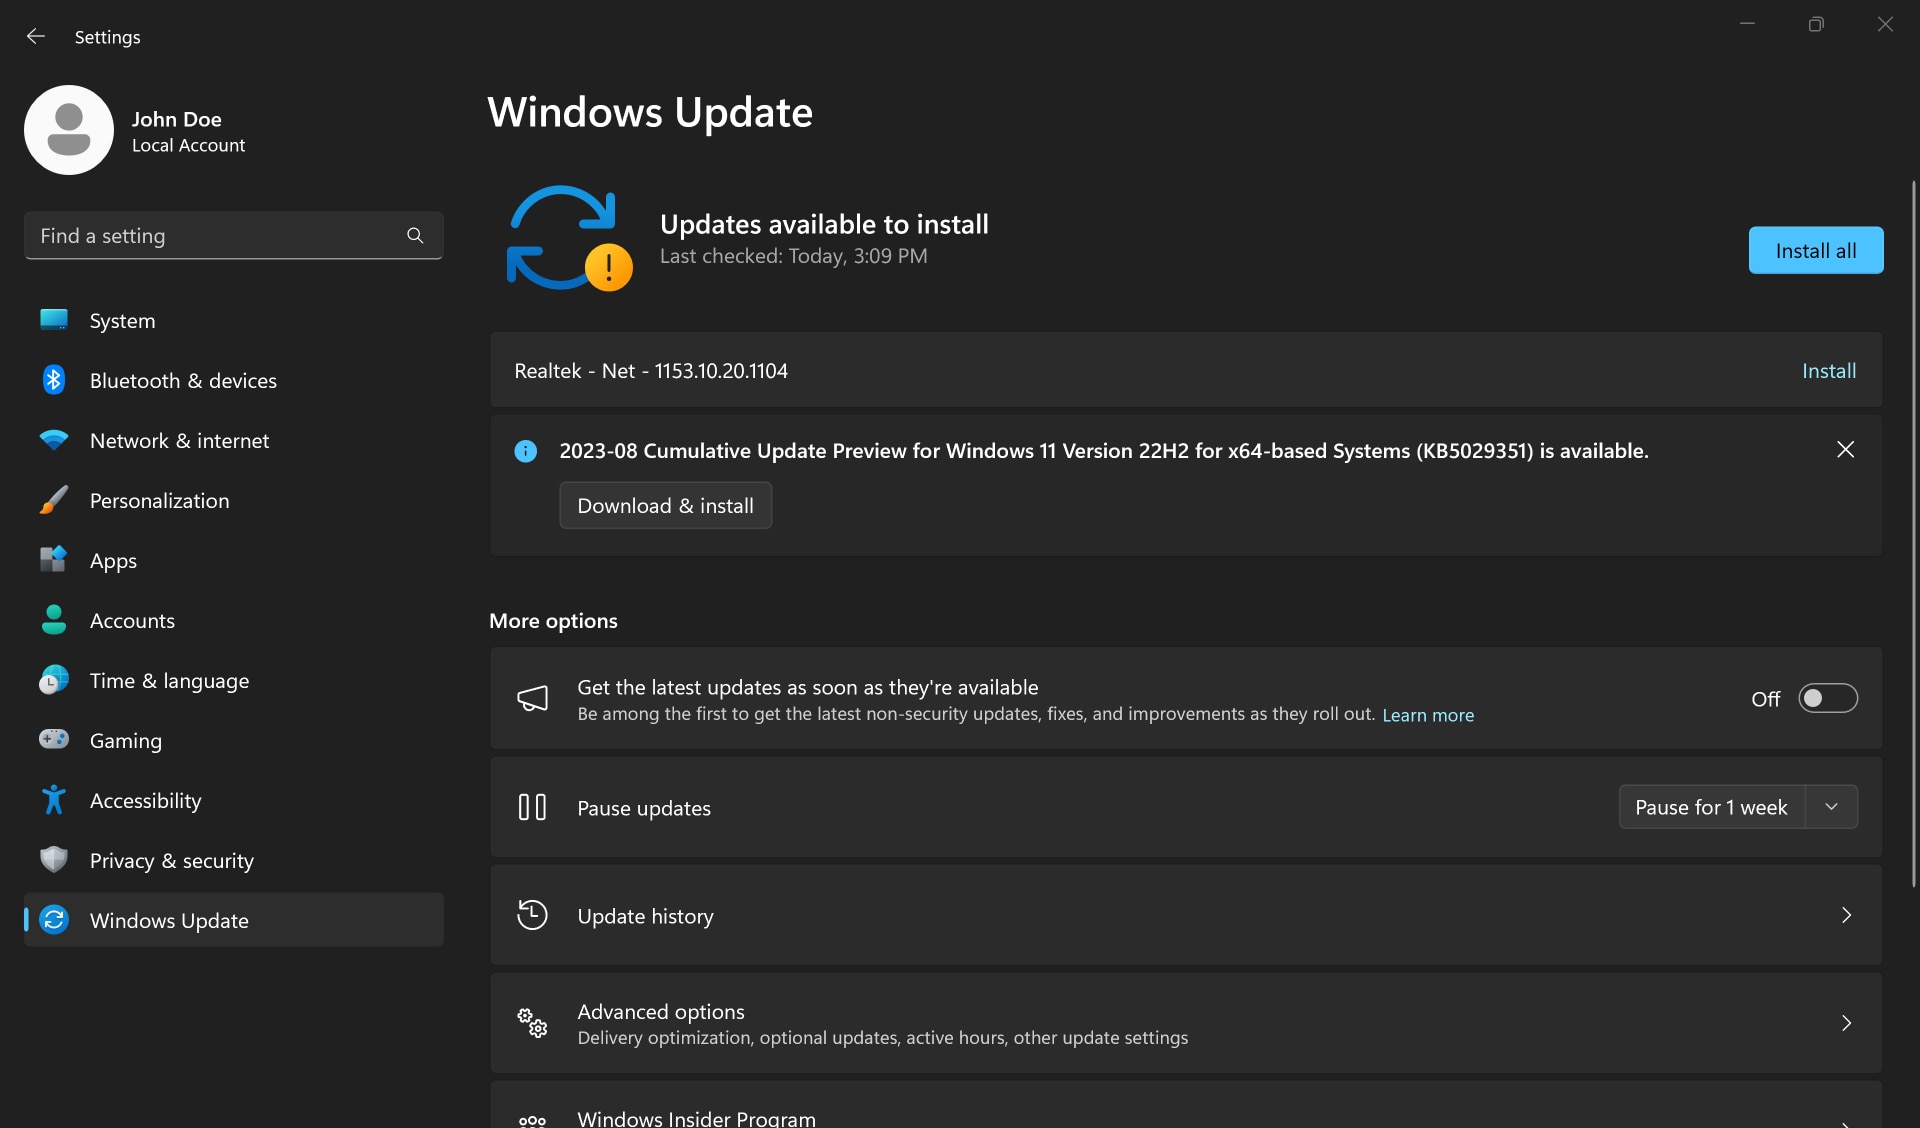 Botón Instalar todo en la aplicación Configuración de Windows Update.